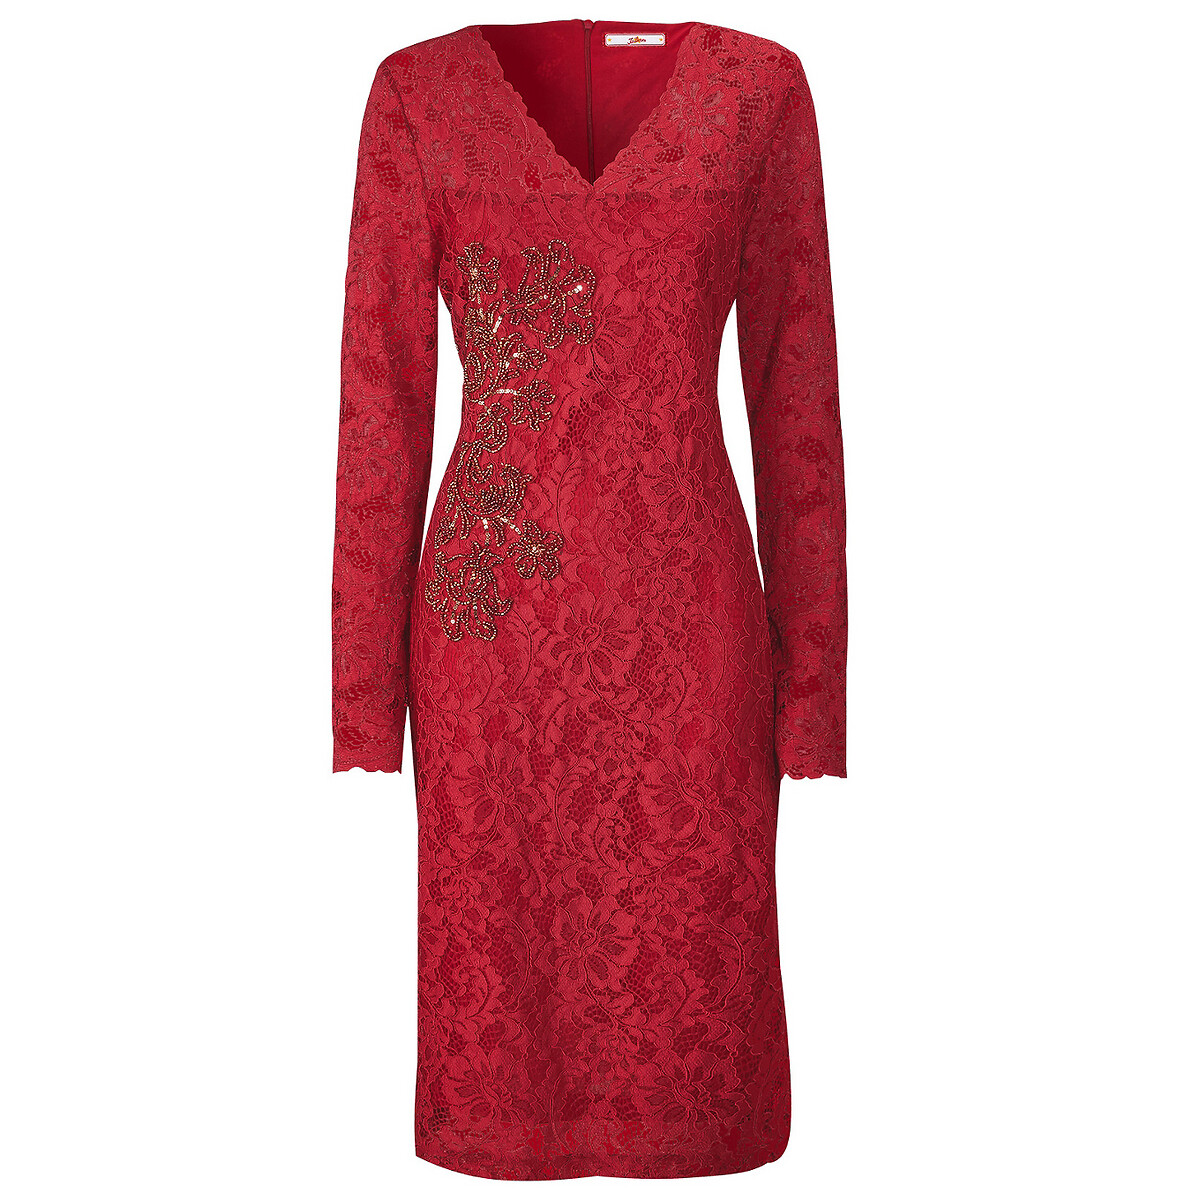 Платье LaRedoute Приталенное с кружевом и вышивкой 36 (FR) - 42 (RUS) красный, размер 36 (FR) - 42 (RUS) Приталенное с кружевом и вышивкой 36 (FR) - 42 (RUS) красный - фото 3